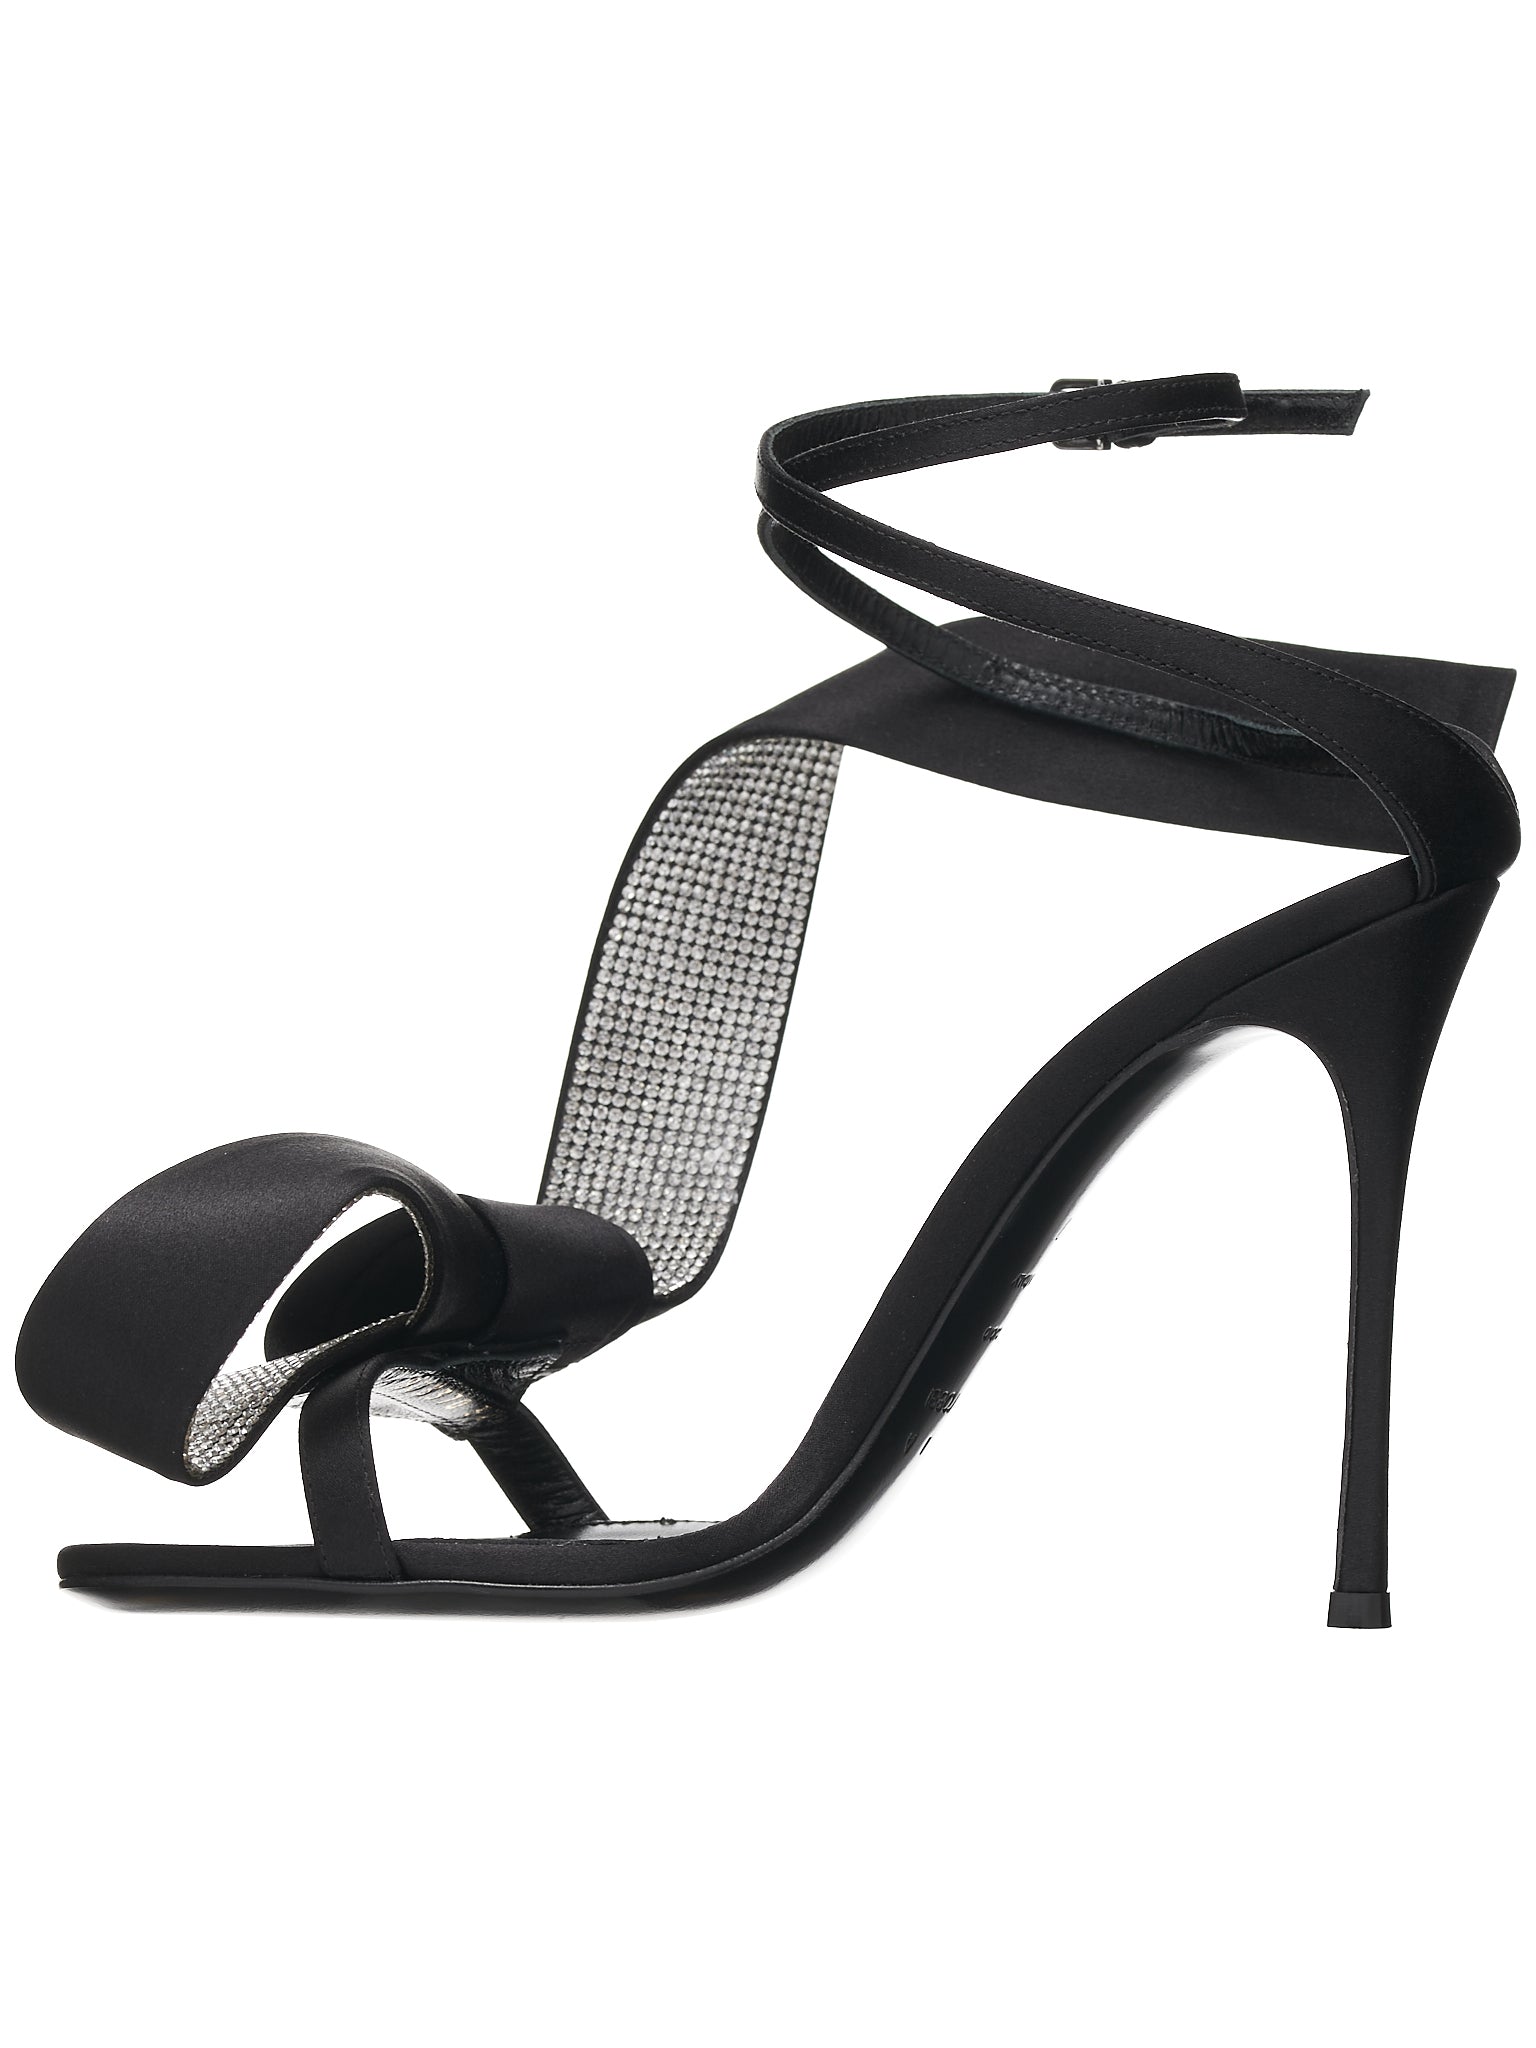 AREA Marquise Sandal Heels (B03370-MFI912-1000-110-NERO-CR)